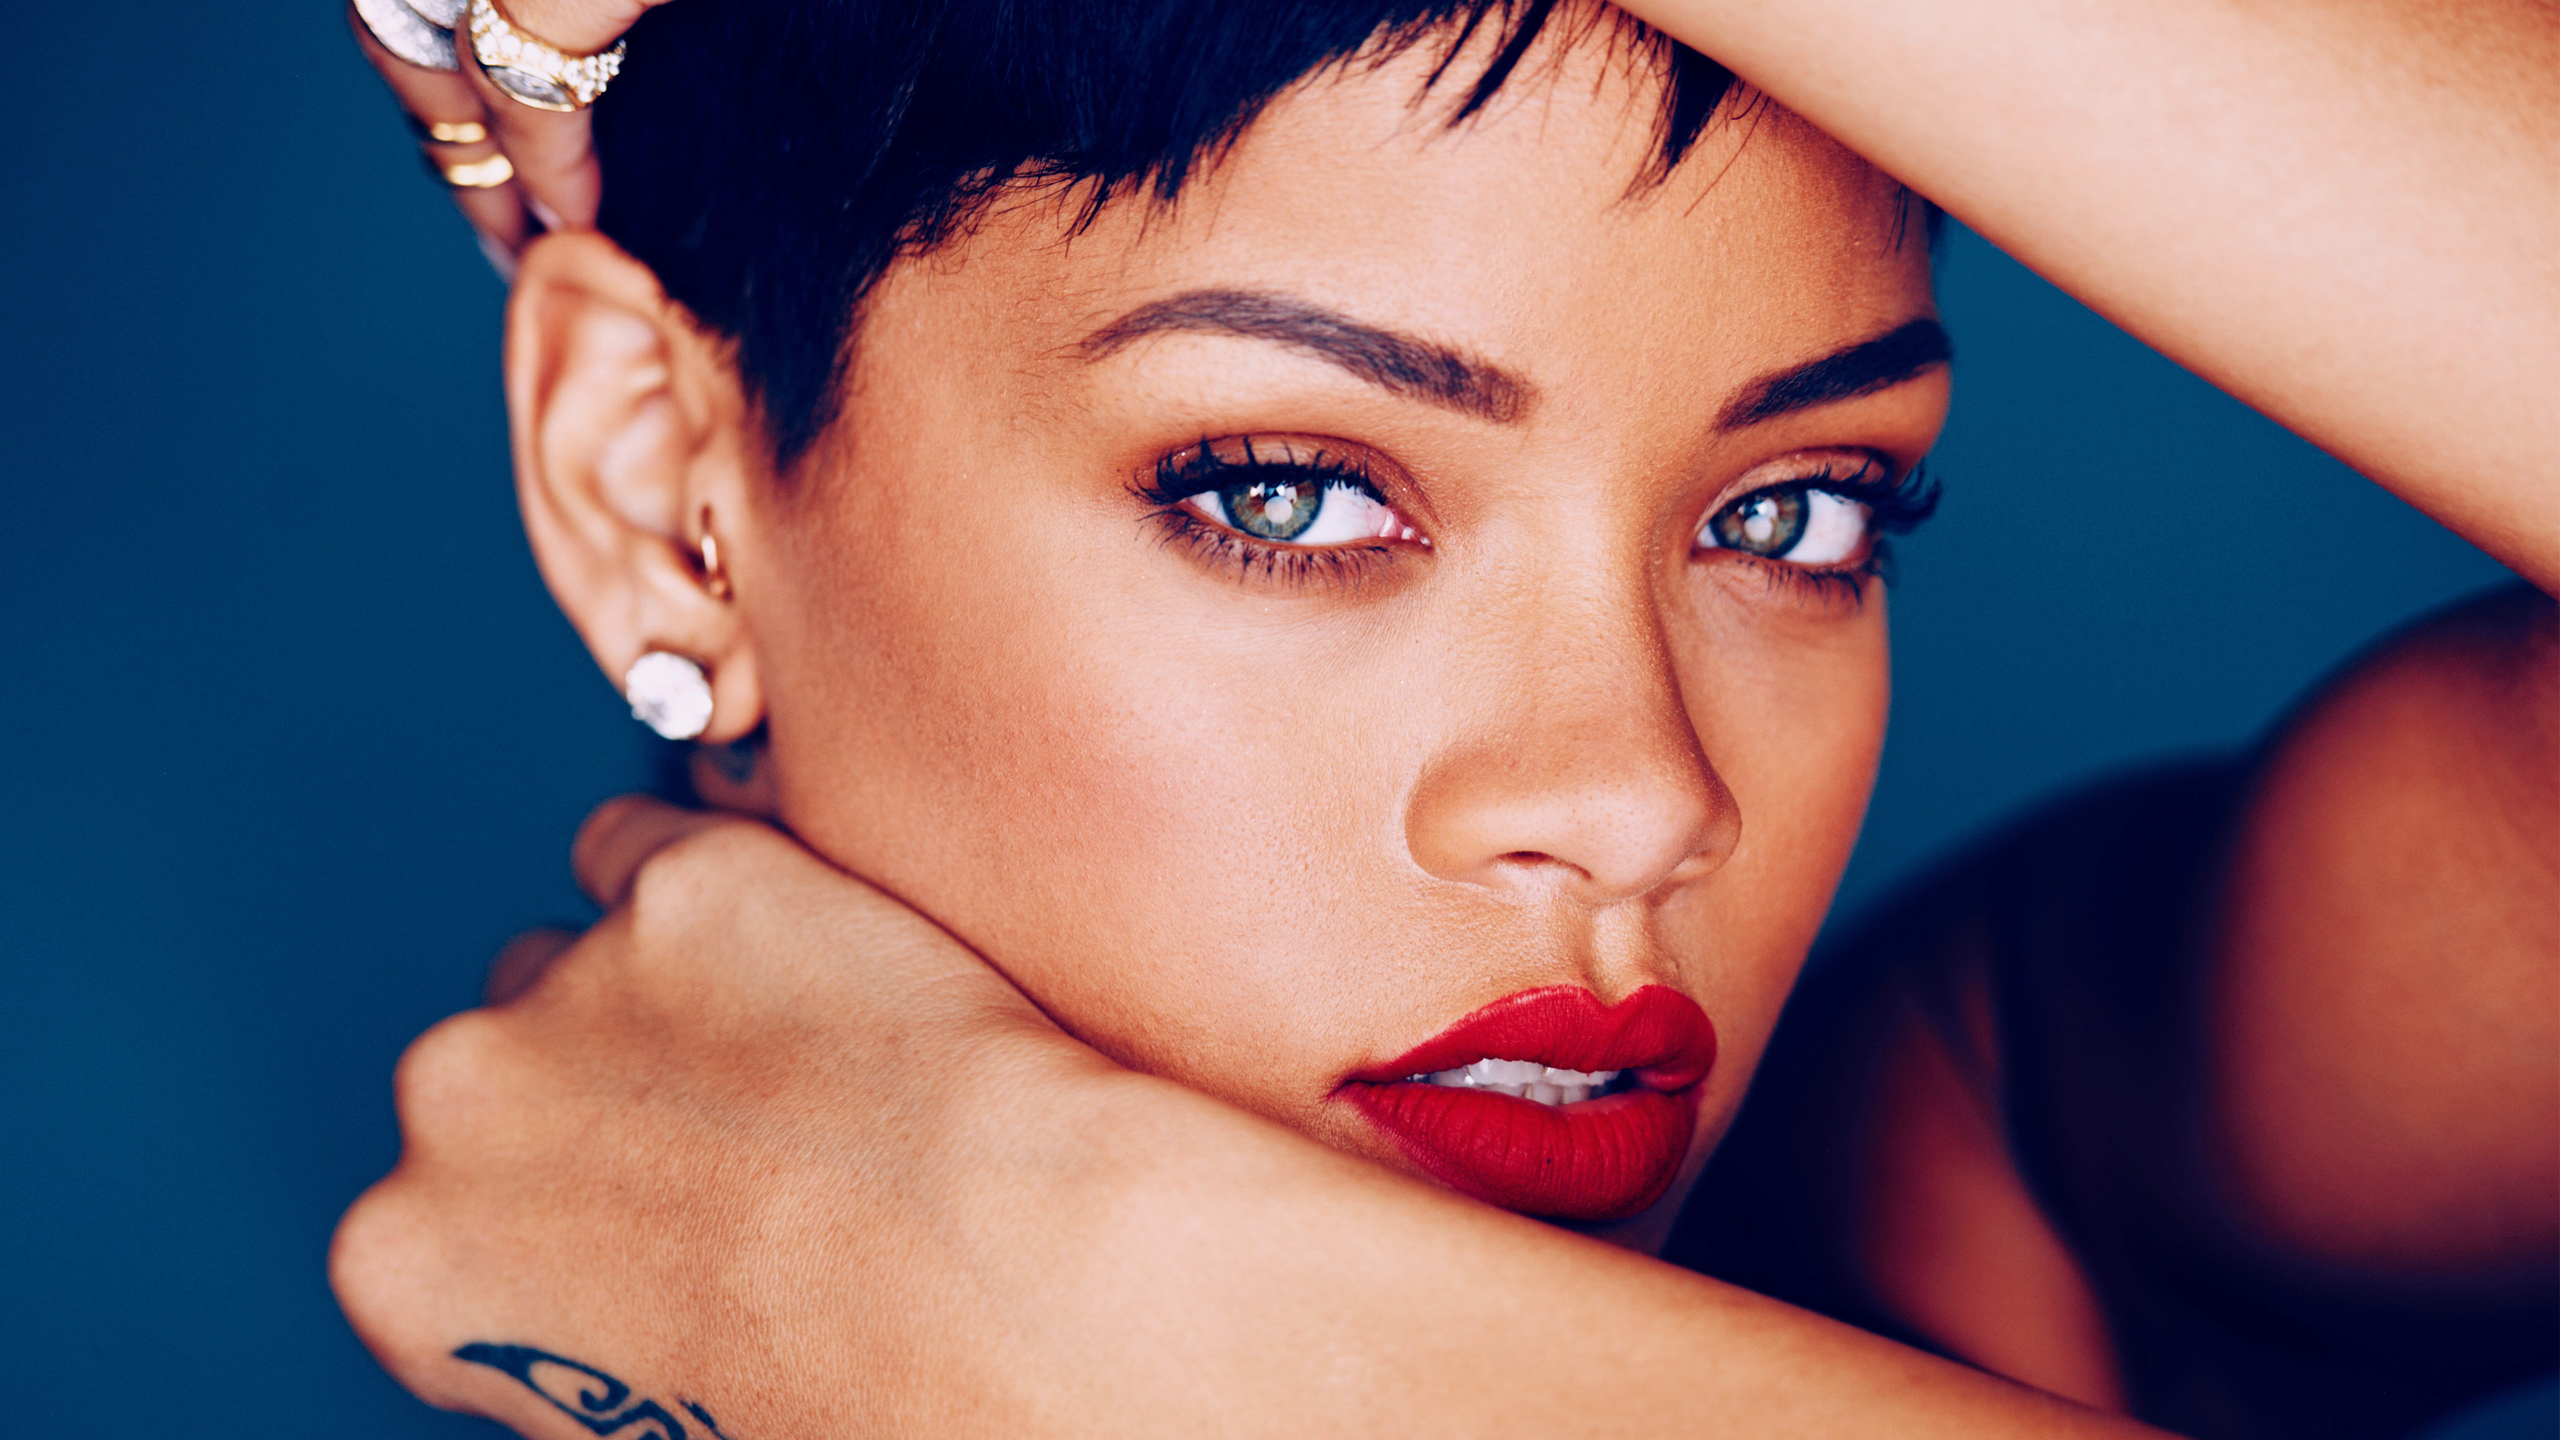 Rihanna HD Wallpaper - WallpaperFX